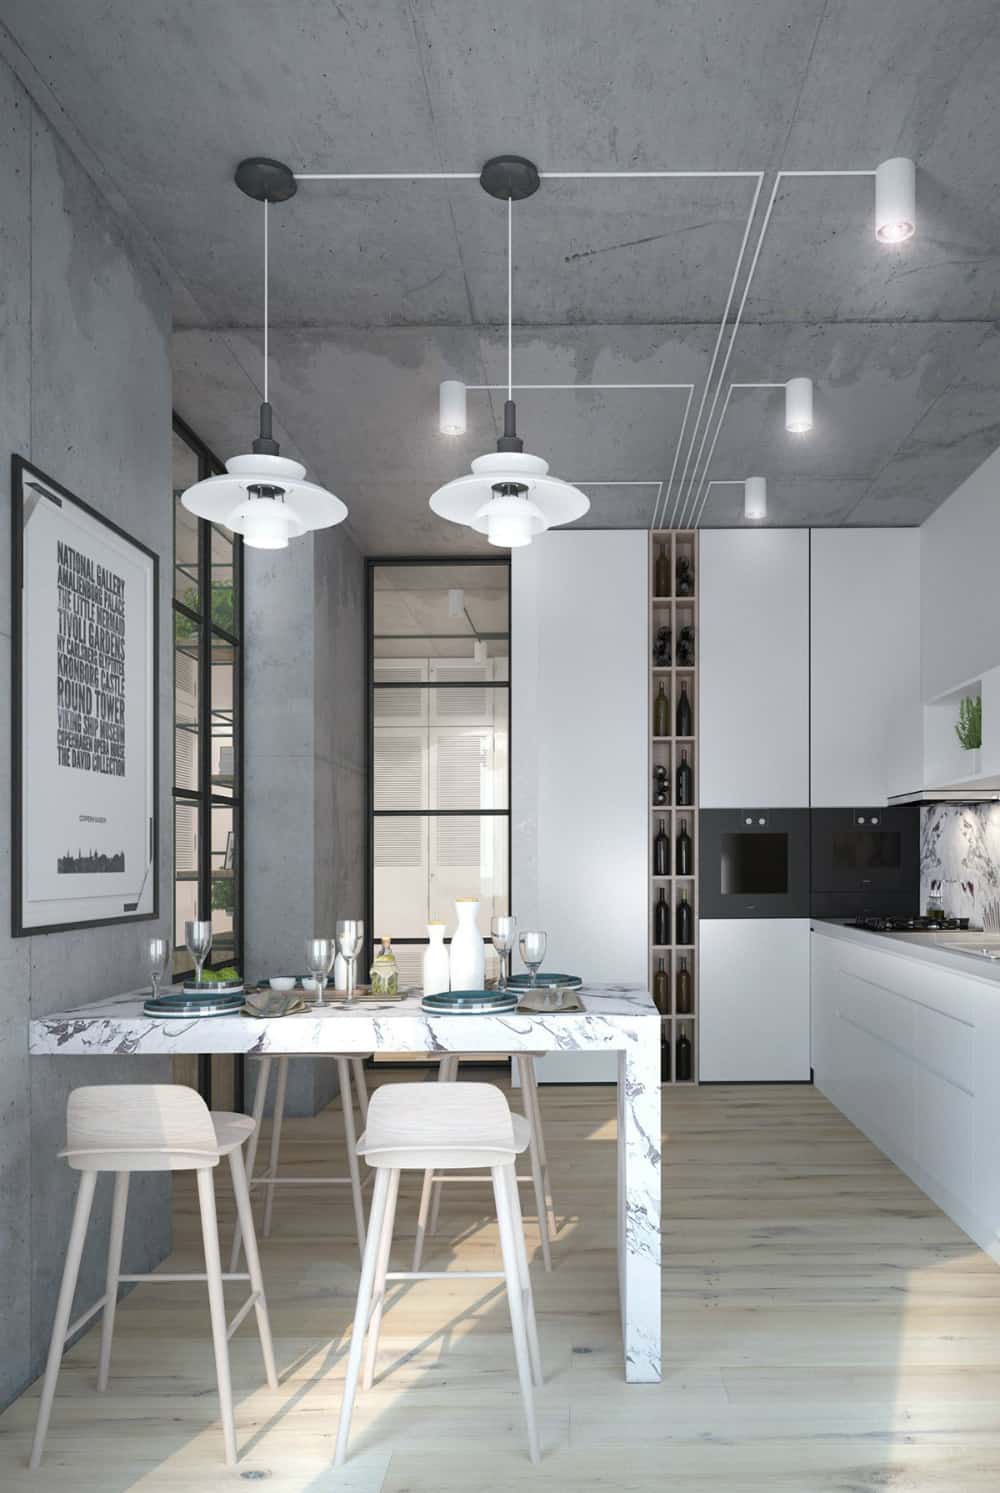 All-concrete kitchen